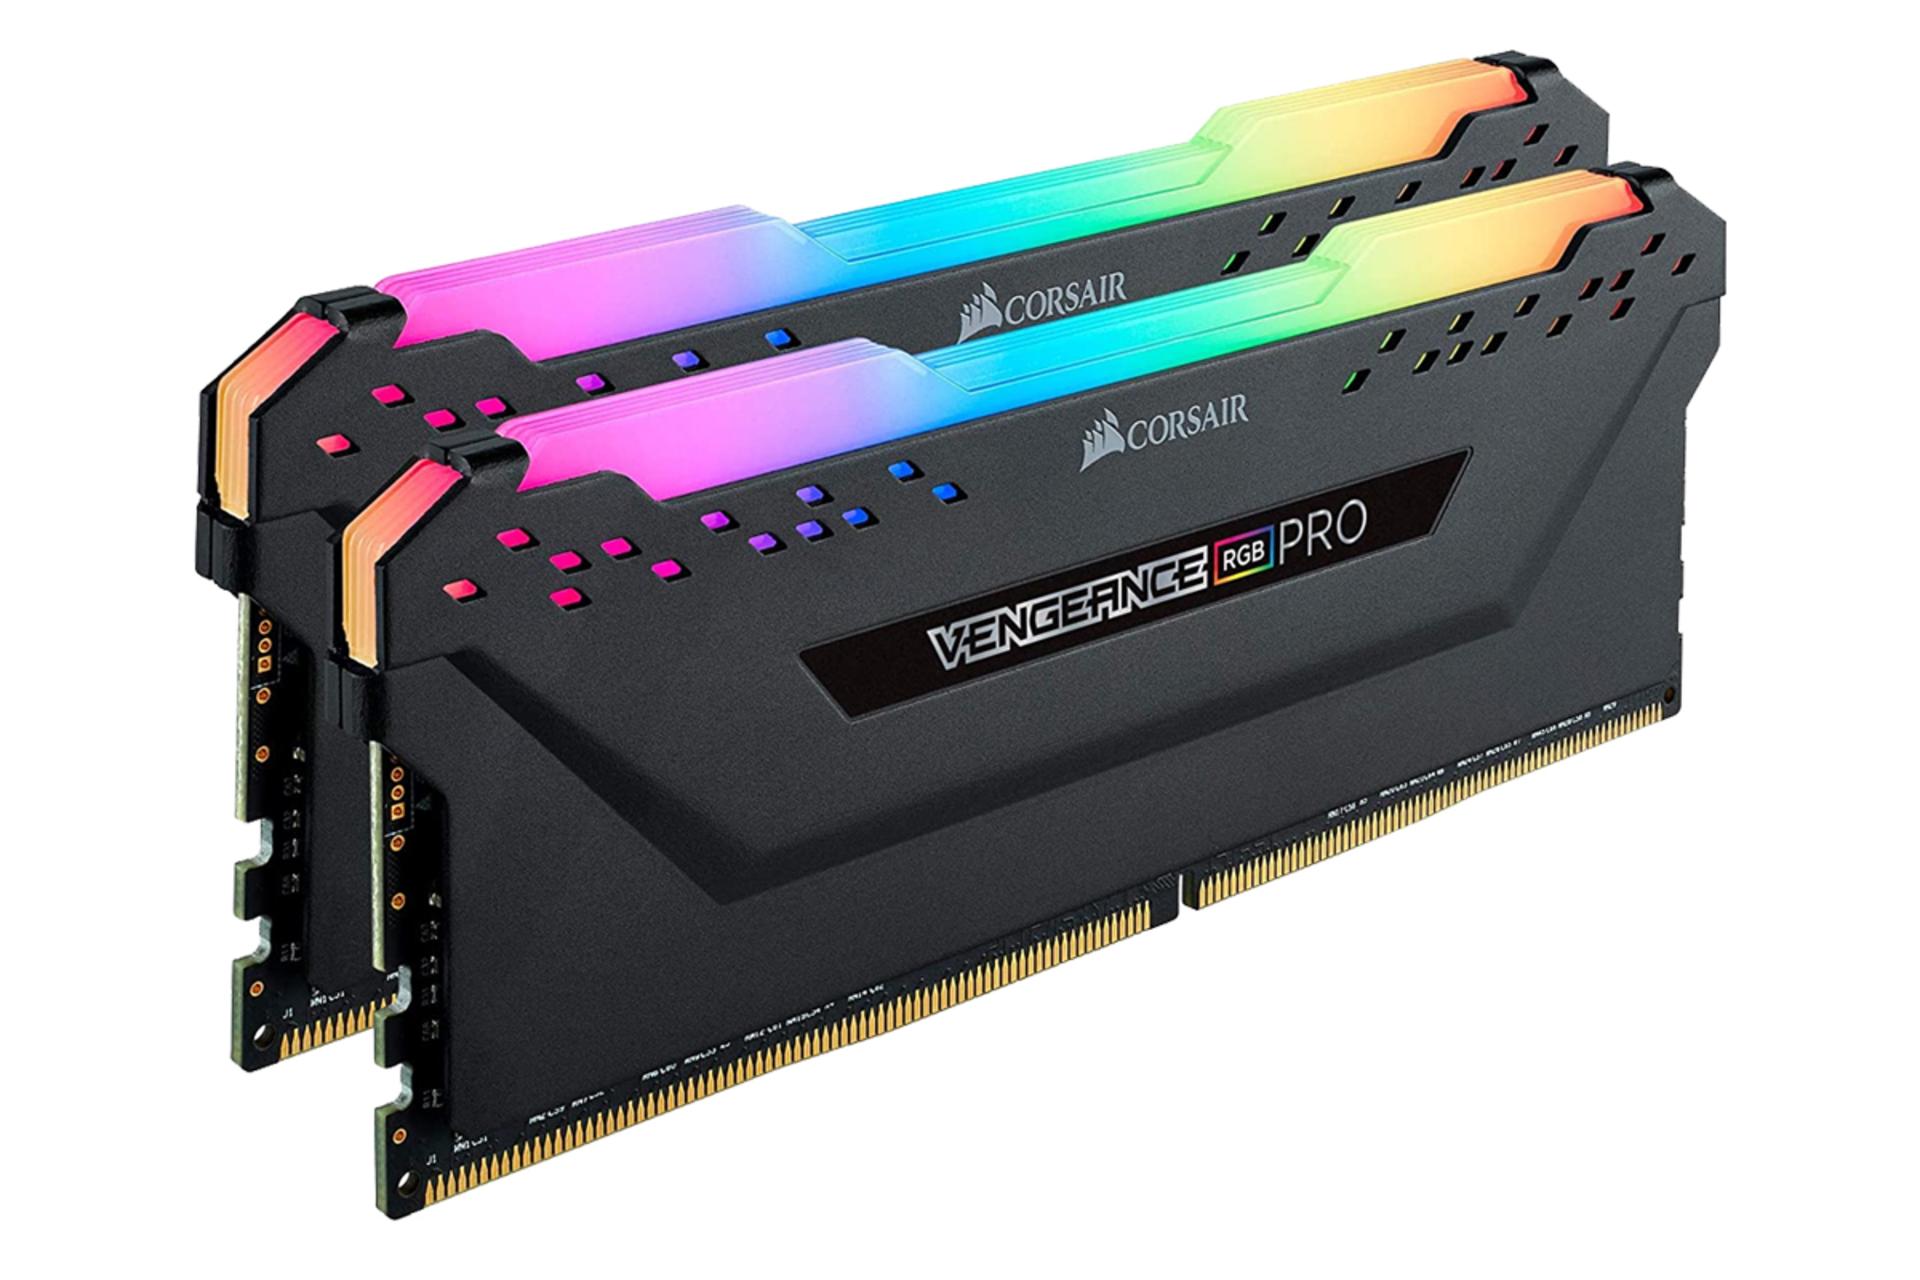 نمای کناری رم کورسیر VENGEANCE RGB PRO ظرفیت 64 گیگابایت (2x32) از نوع DDR4-4000